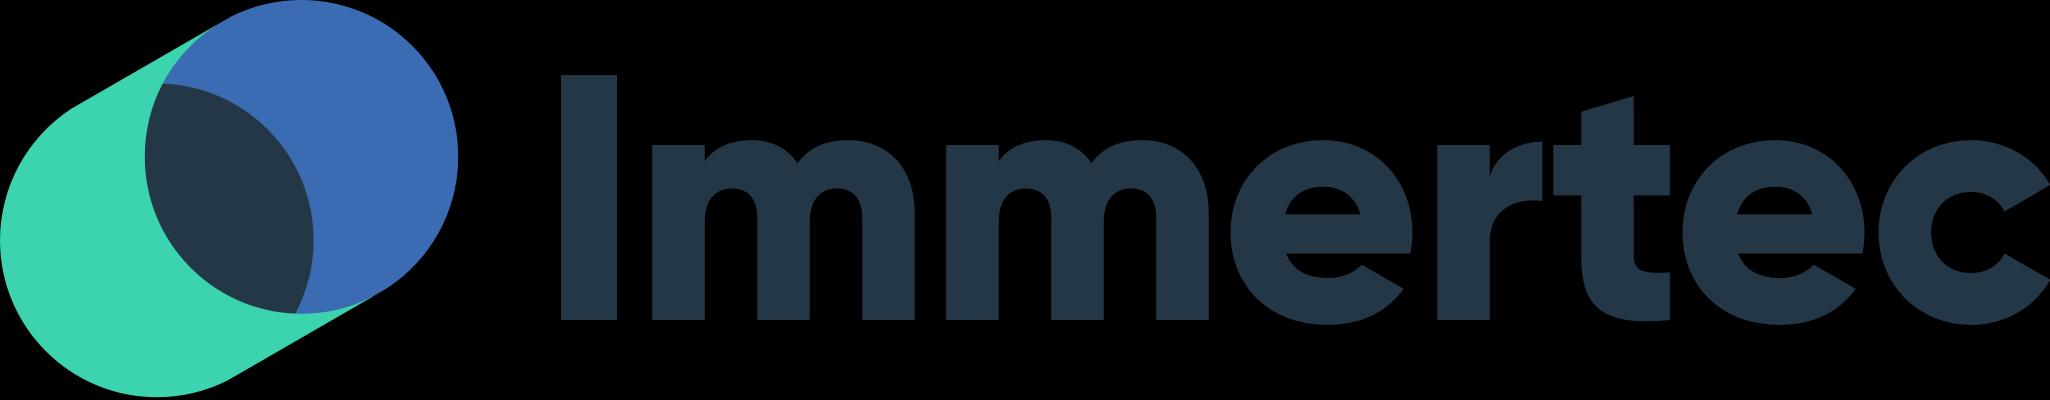 Immertec_logo